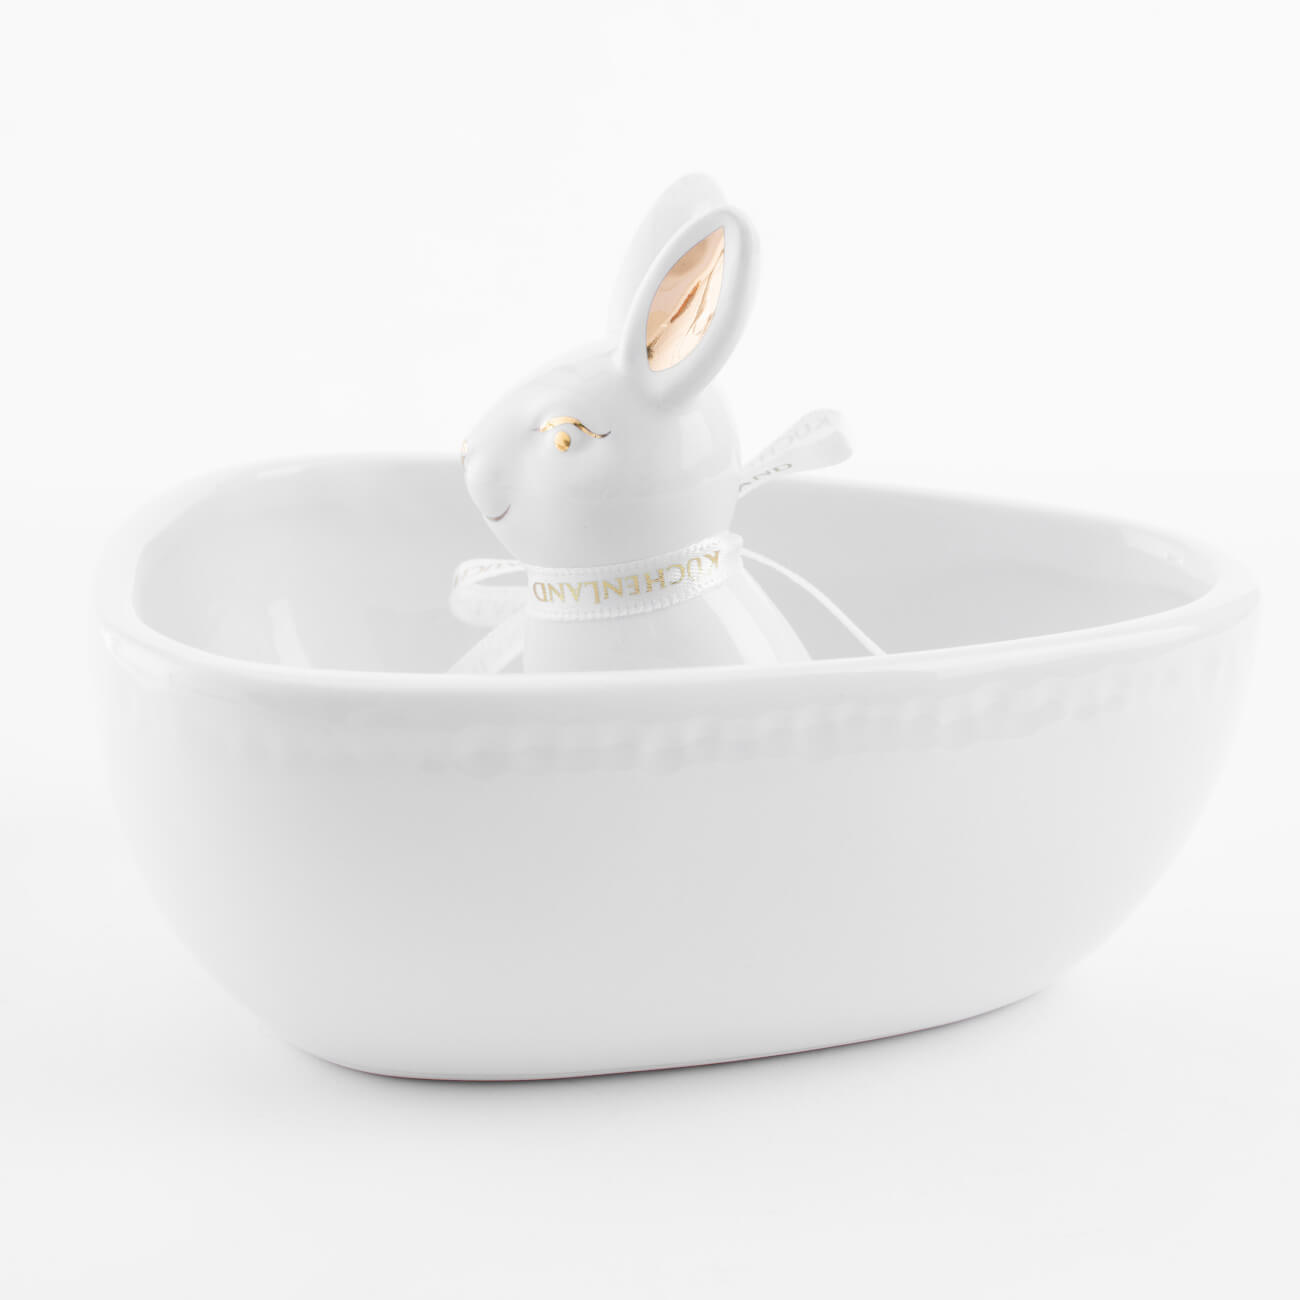 Конфетница, 13х13 см, керамика, бело-золотистая, Кролик внутри, Easter gold конфетница